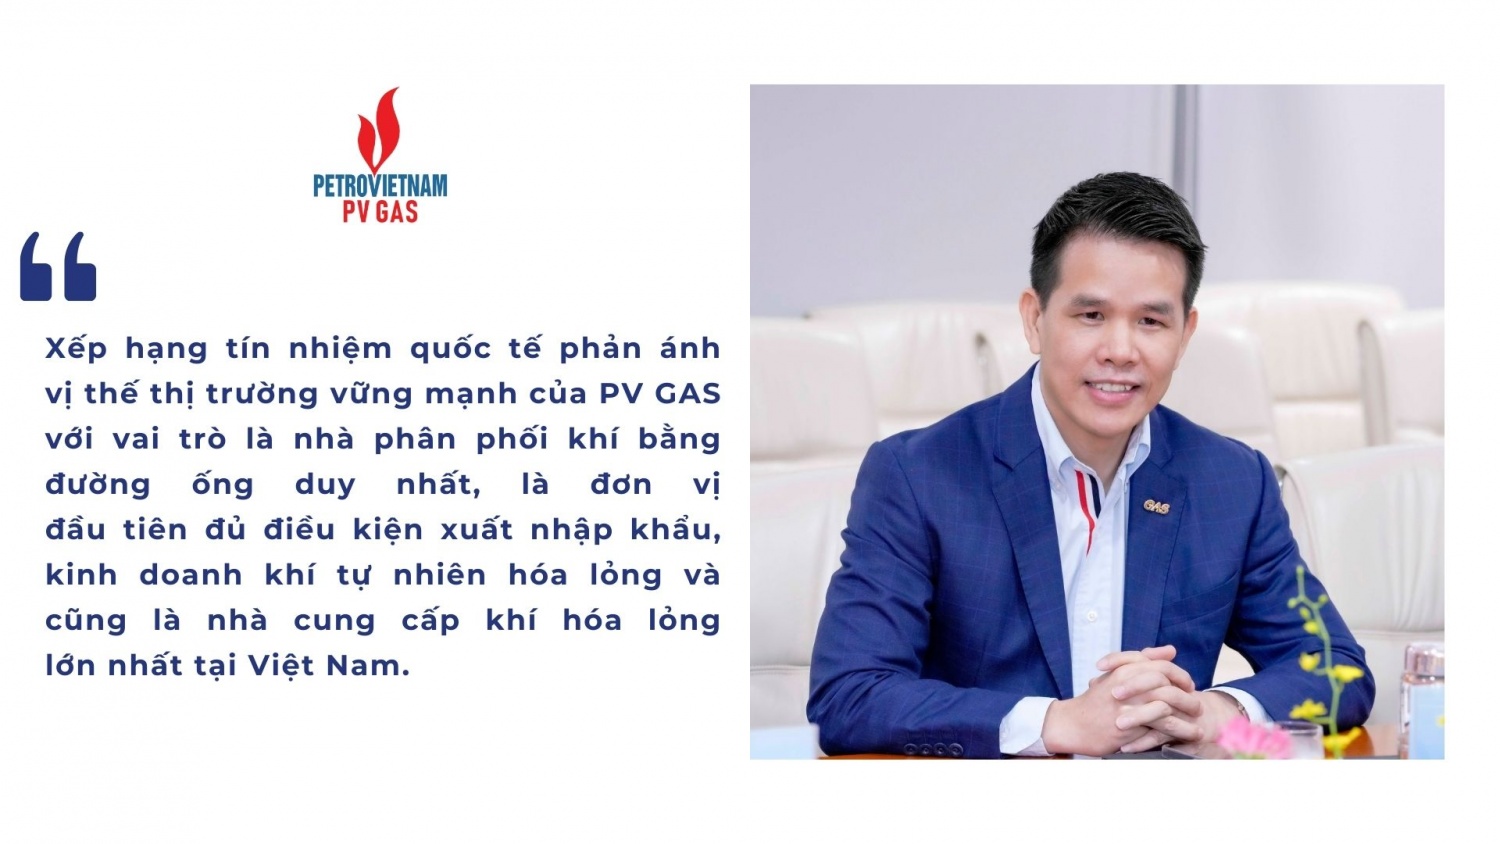 Tổng Giám đốc Phạm Văn Phong khẳng định về quyết tâm và nỗ lực phát triển doanh nghiệp tiên phong ngành công nghiệp khí của PV GAS.